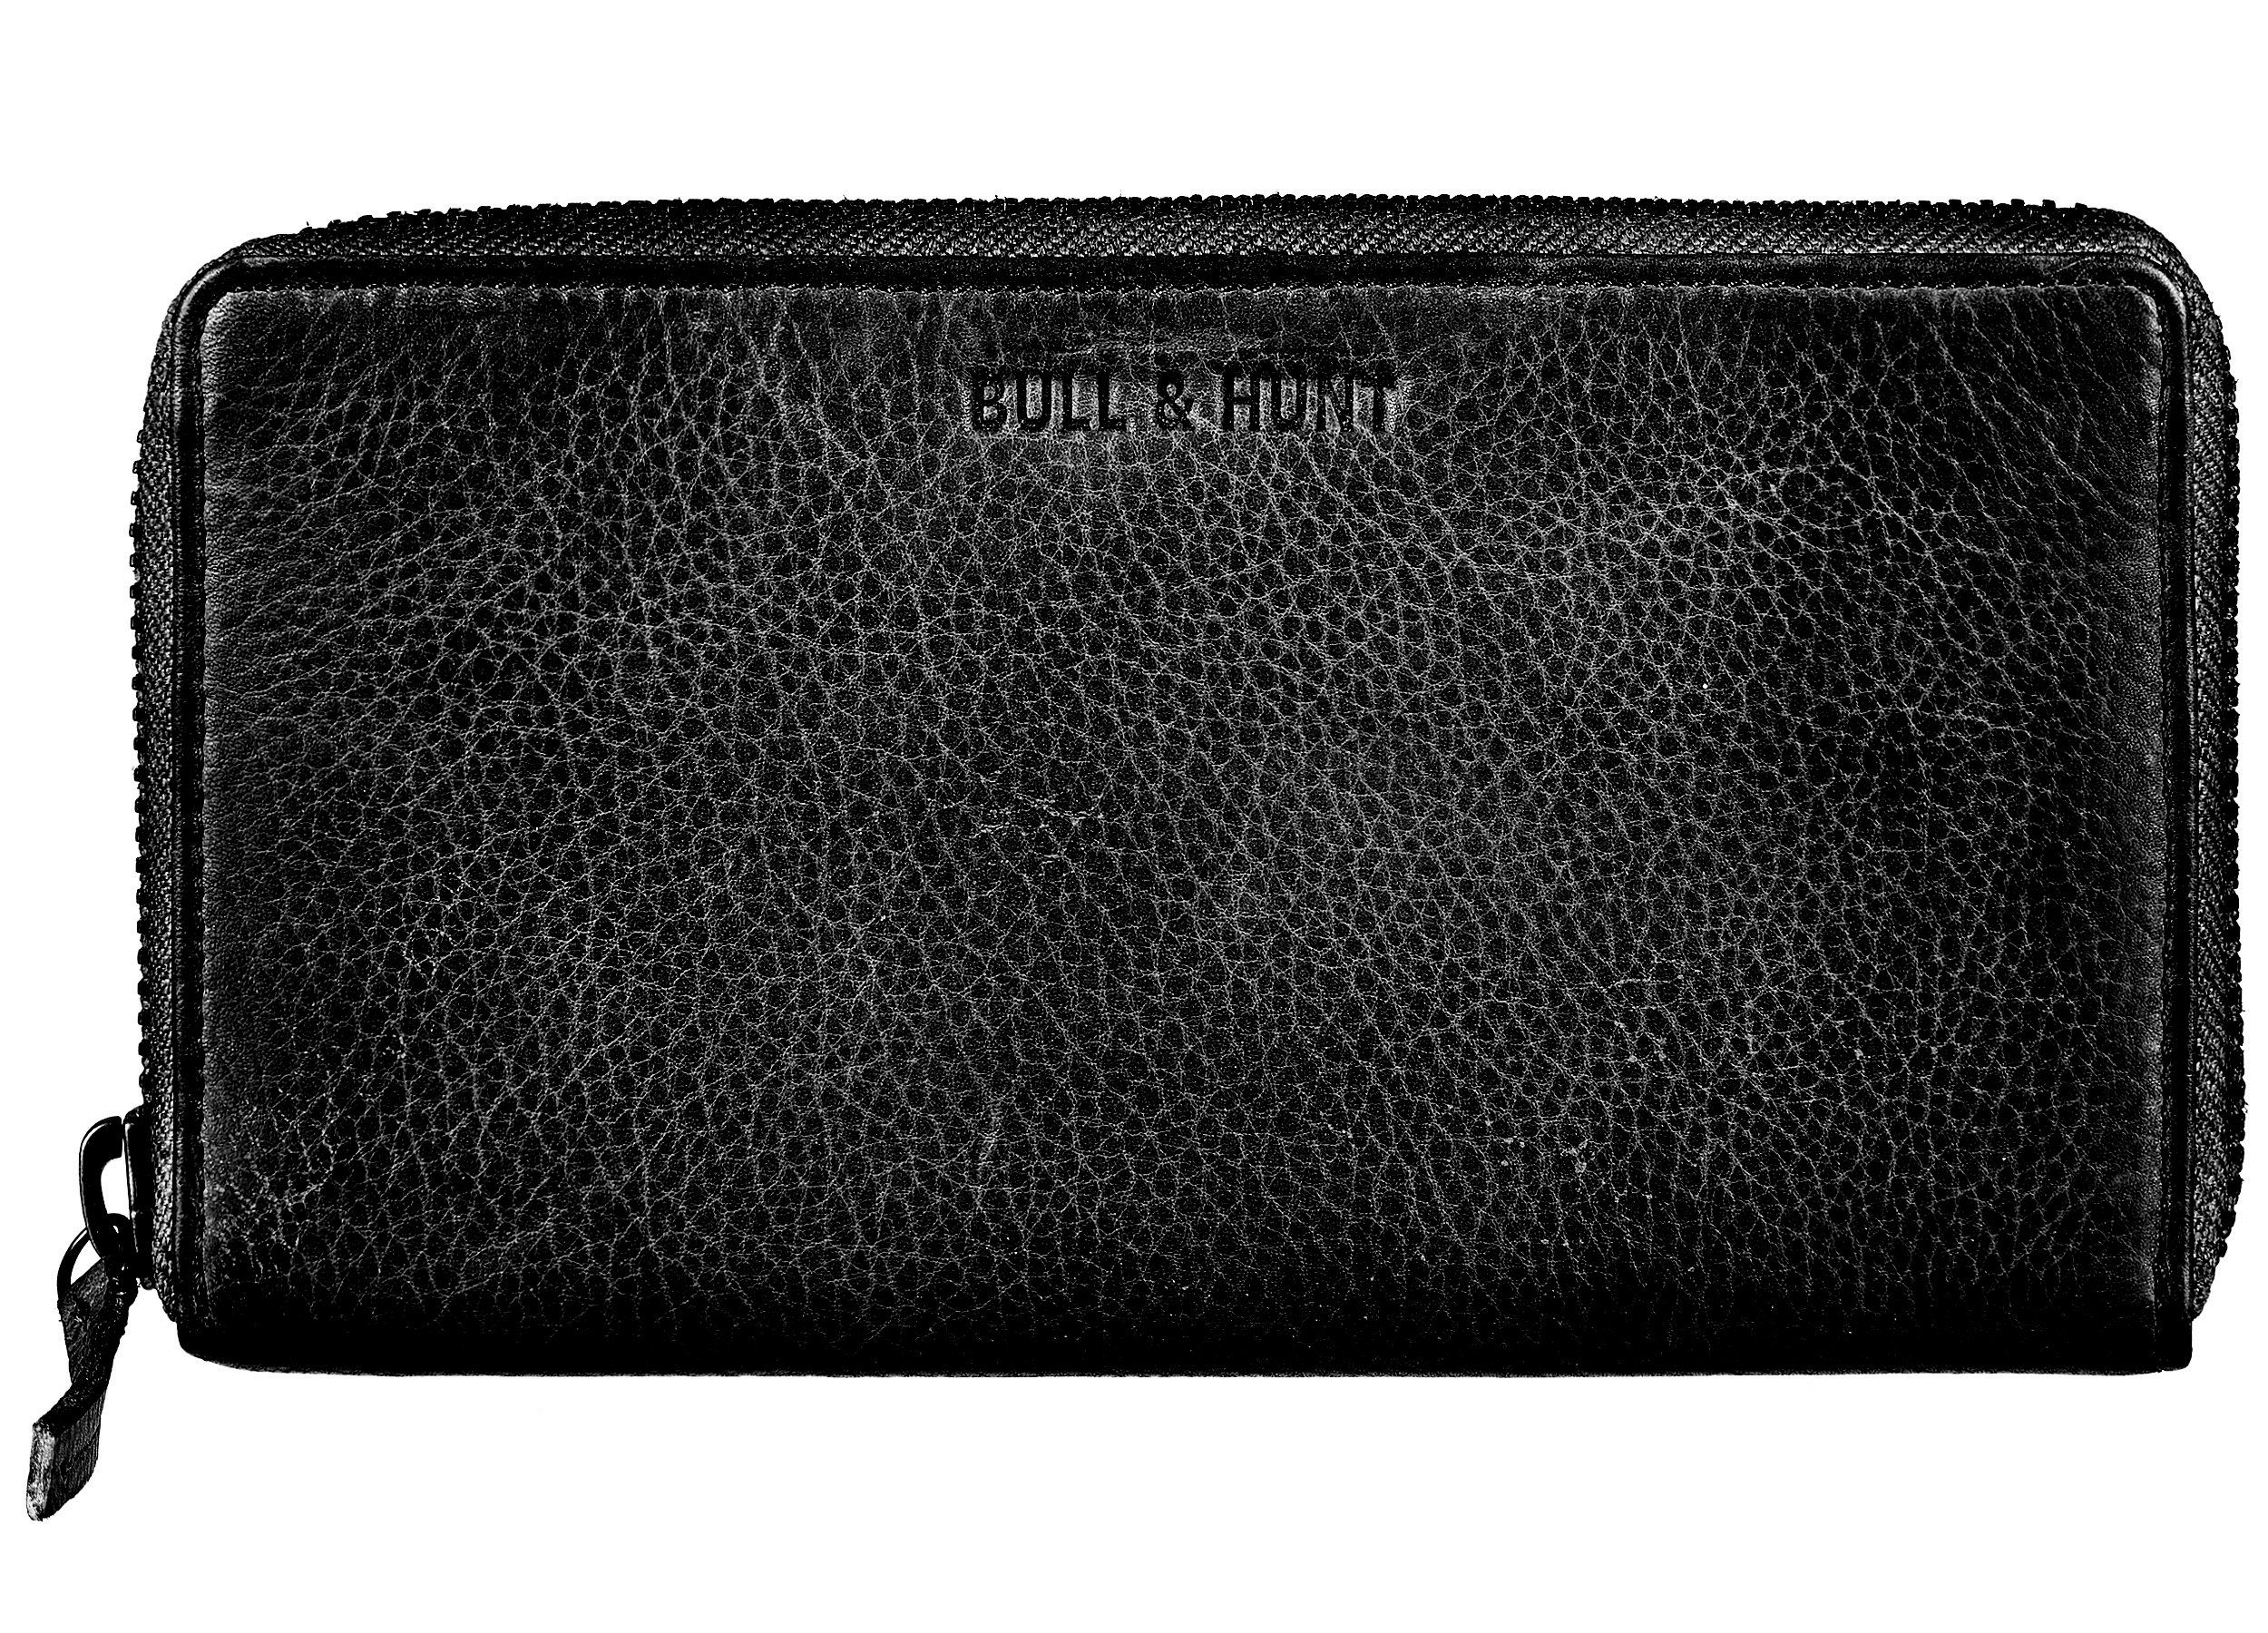 Bull & Hunt Geldbörse large zip wallet black distressed